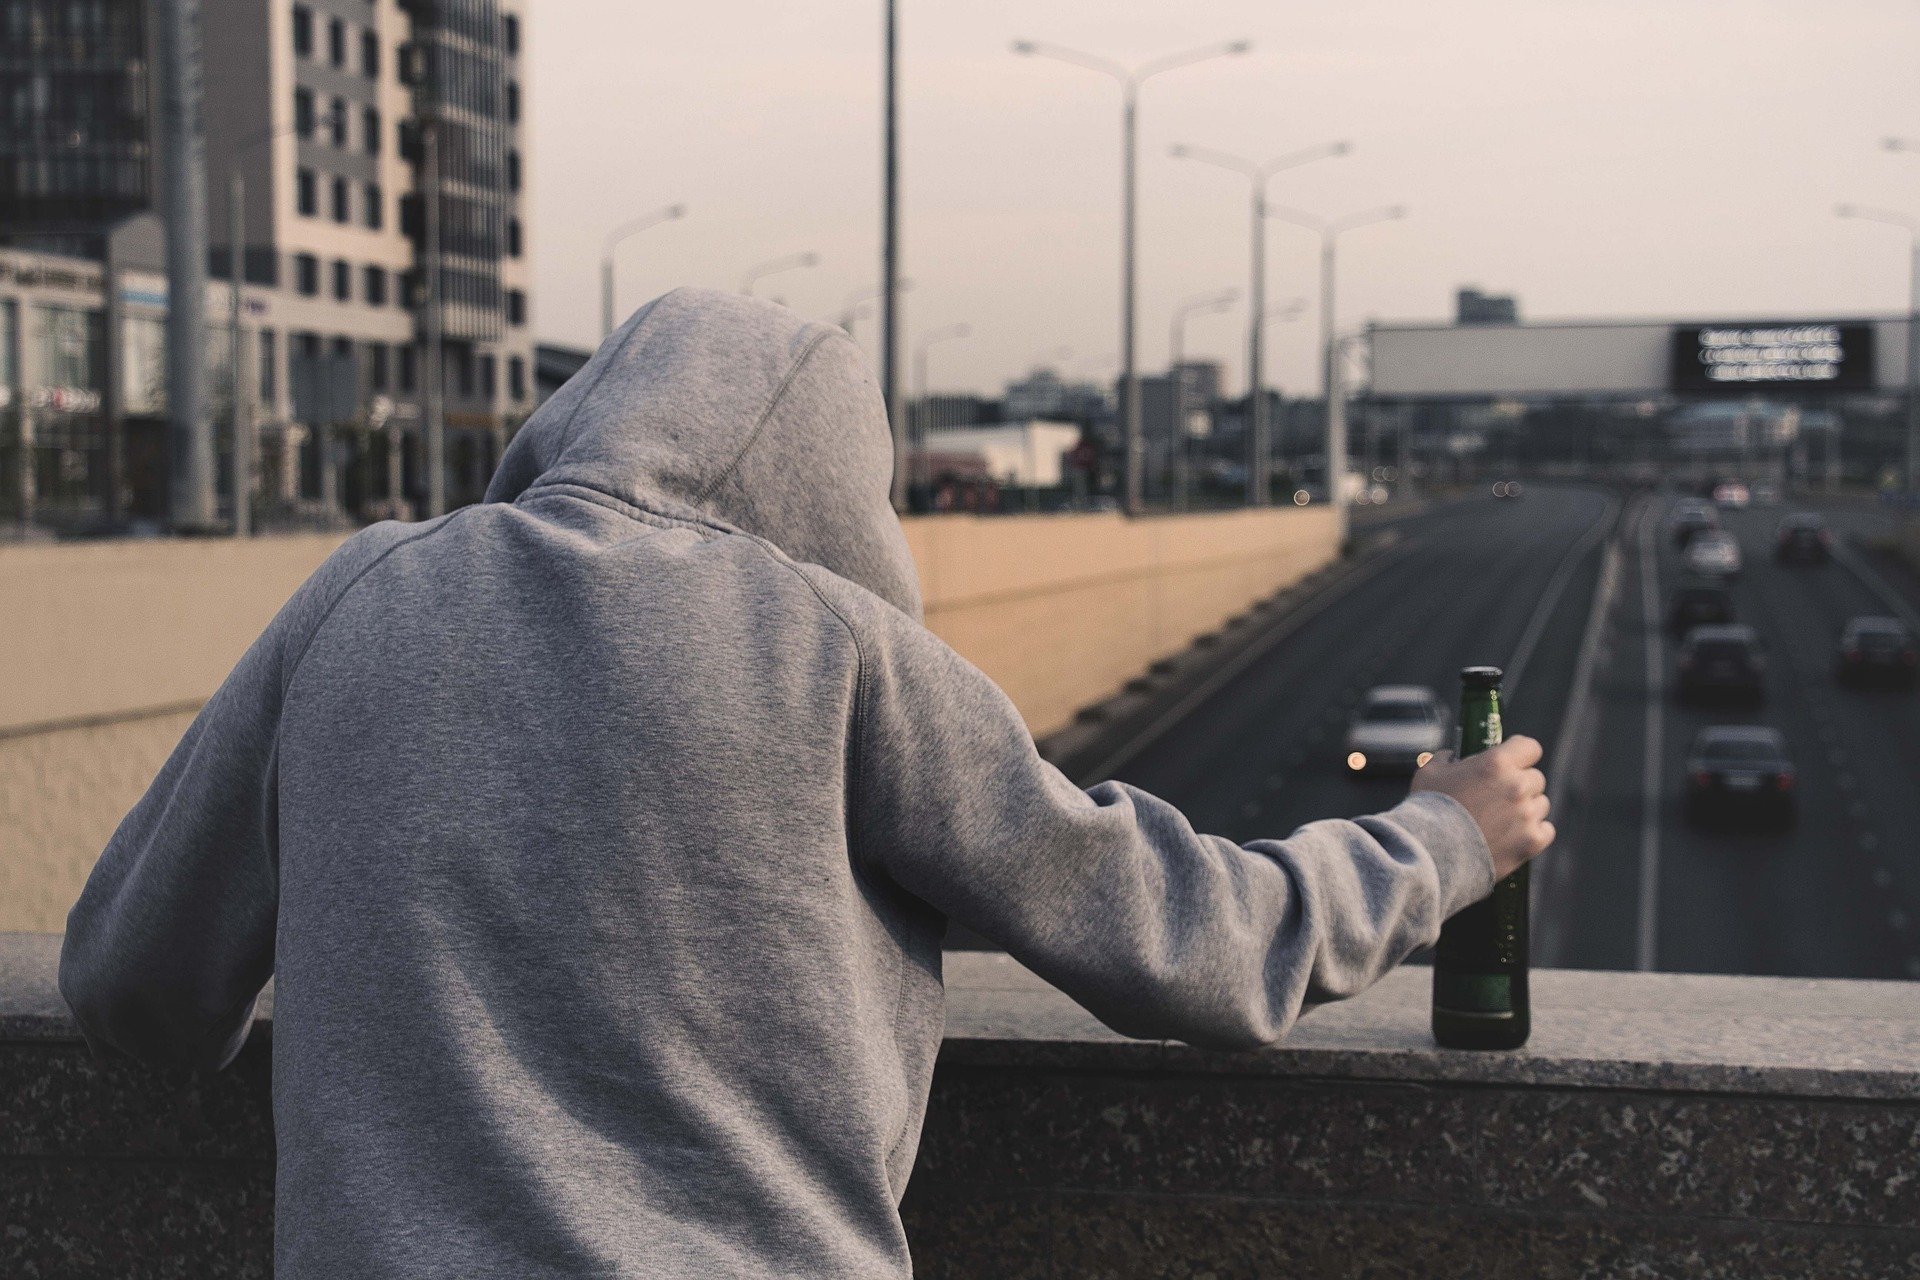 Bộ Lao động đã đặc biệt nhắc nhở người dân “nếu lái xe thì không được uống rượu bia, uống rượu bia thì không nên lái xe”. (Nguồn ảnh: kho ảnh Pixabay)